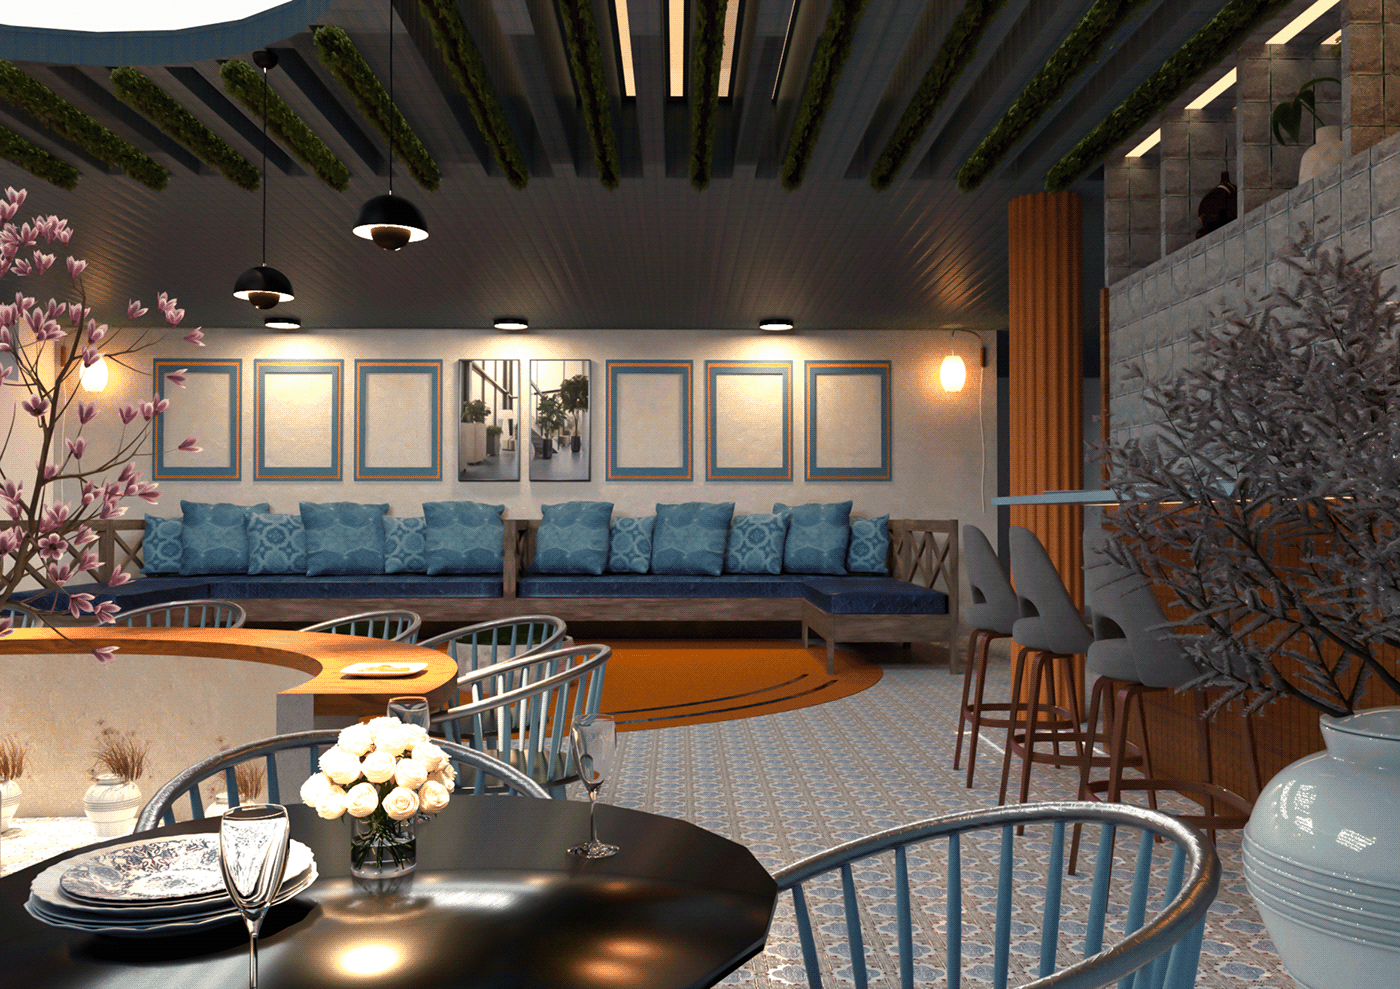 interior design  restaurant beach orange blue 3D Render visualization vray SketchUP